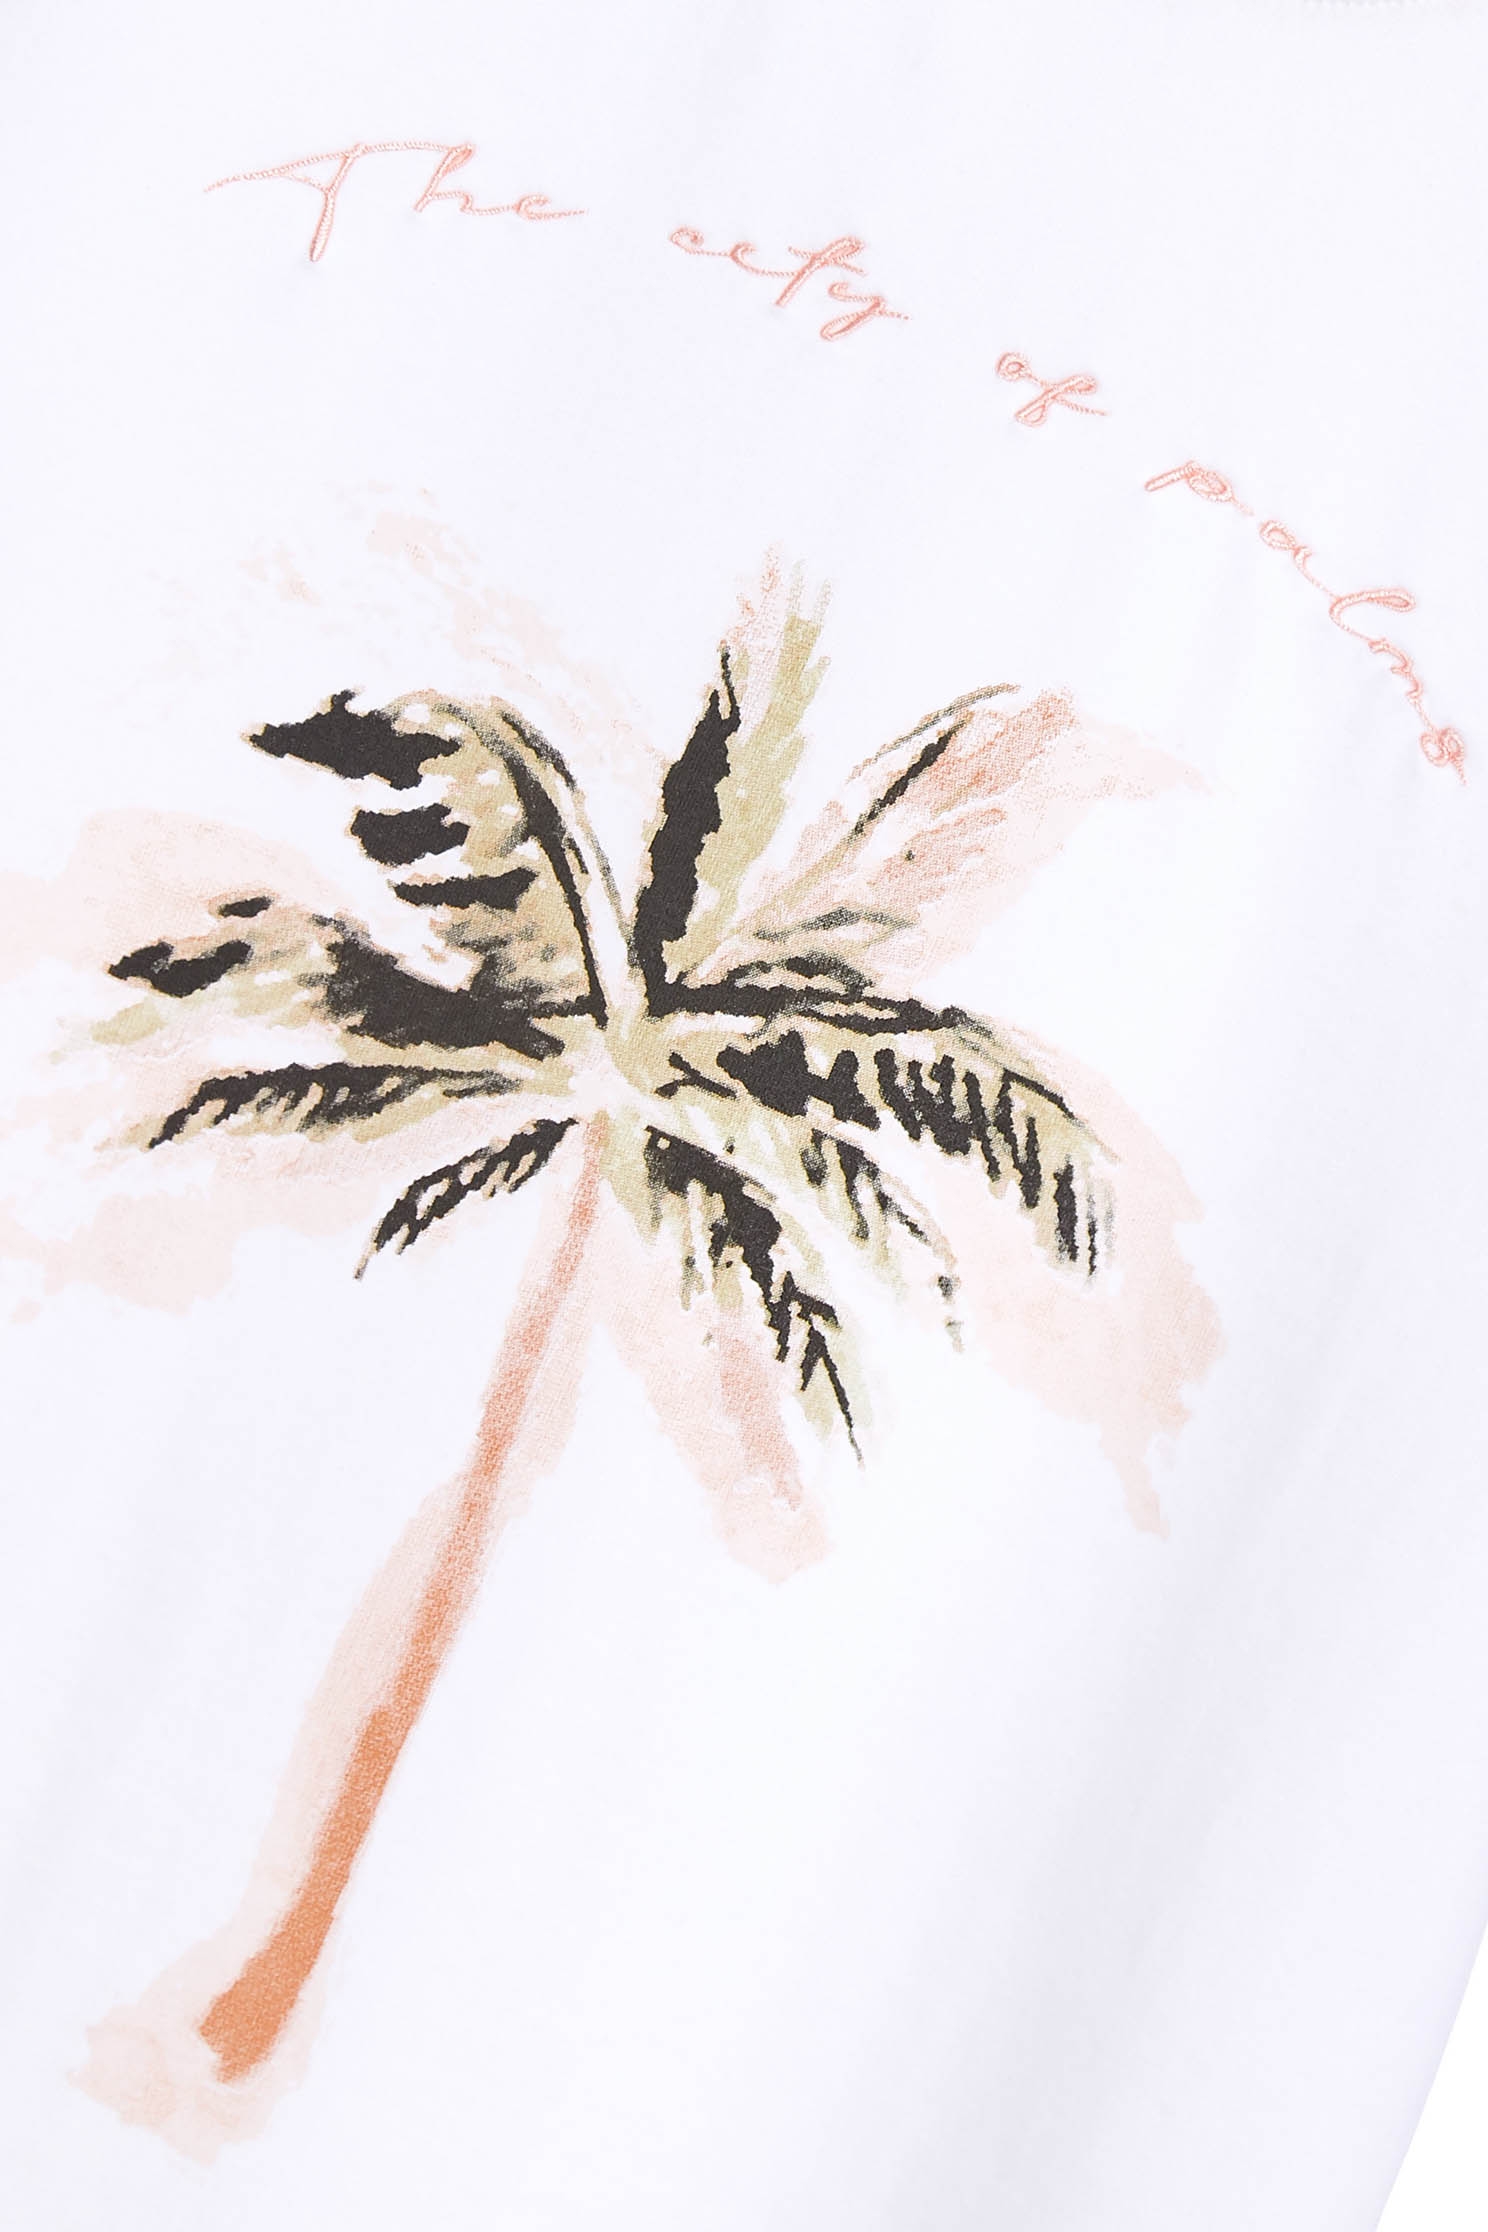 椰子樹印花T恤椰子樹印花T恤,T-Shirt,T恤,上衣,刺繡,圓領上衣,春夏穿搭,舒適主義